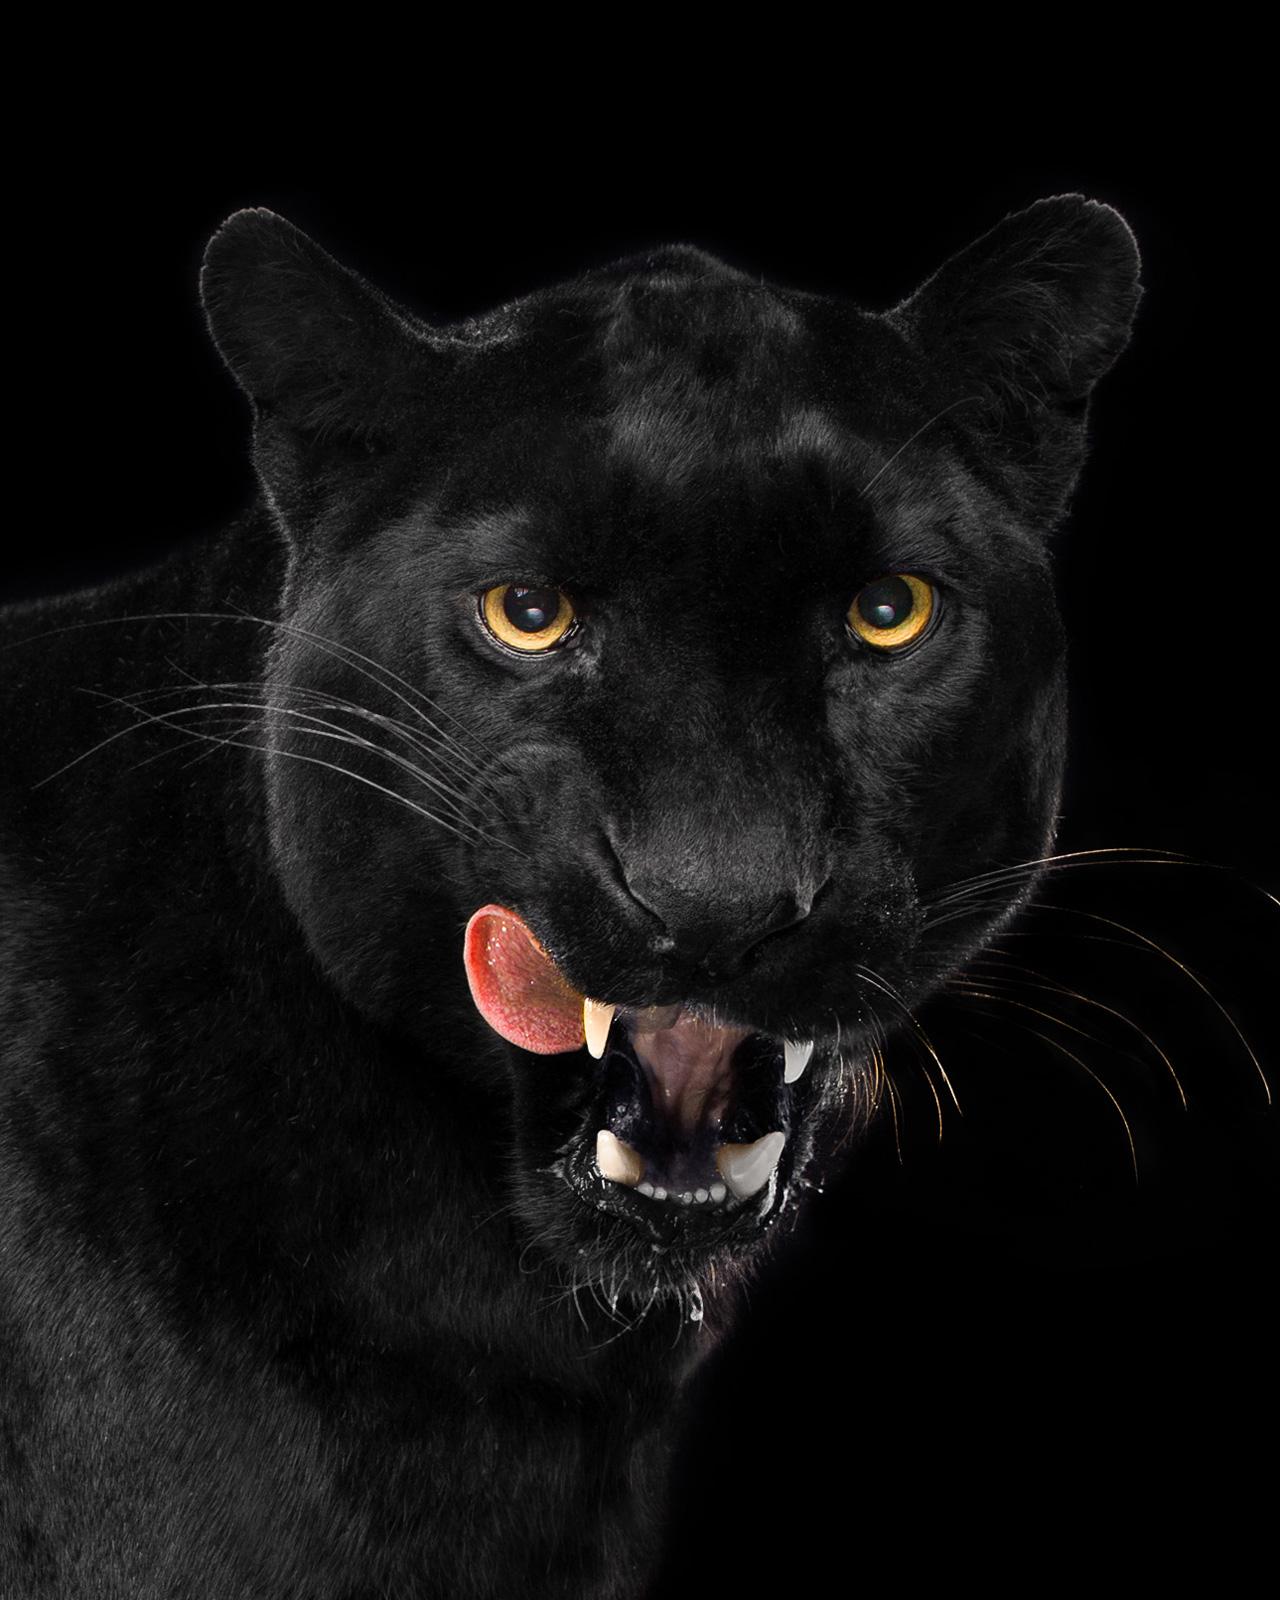 Leopard #4 - Signierter zeitgenössischer Druck in limitierter Auflage, Schwarzes Tier, Porträt – Photograph von Tim Platt